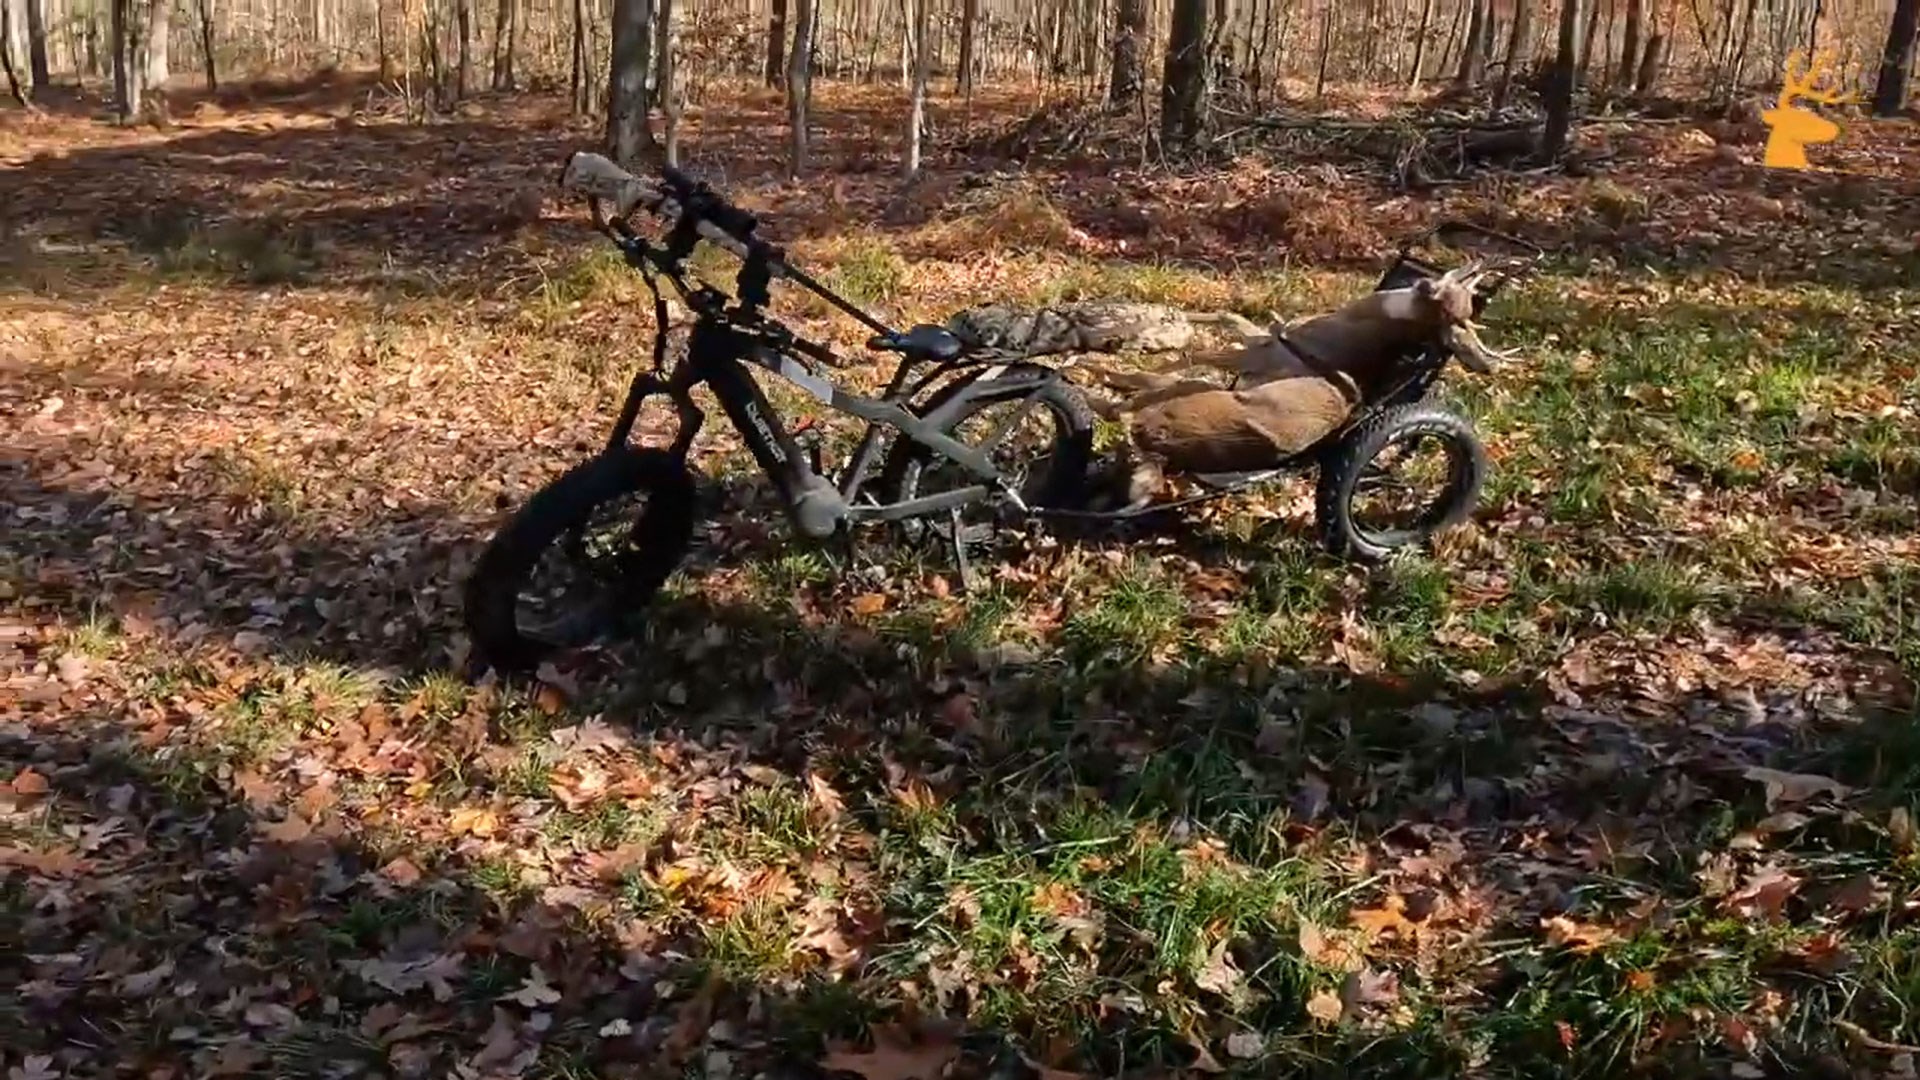 Apex Pro in woods with deer